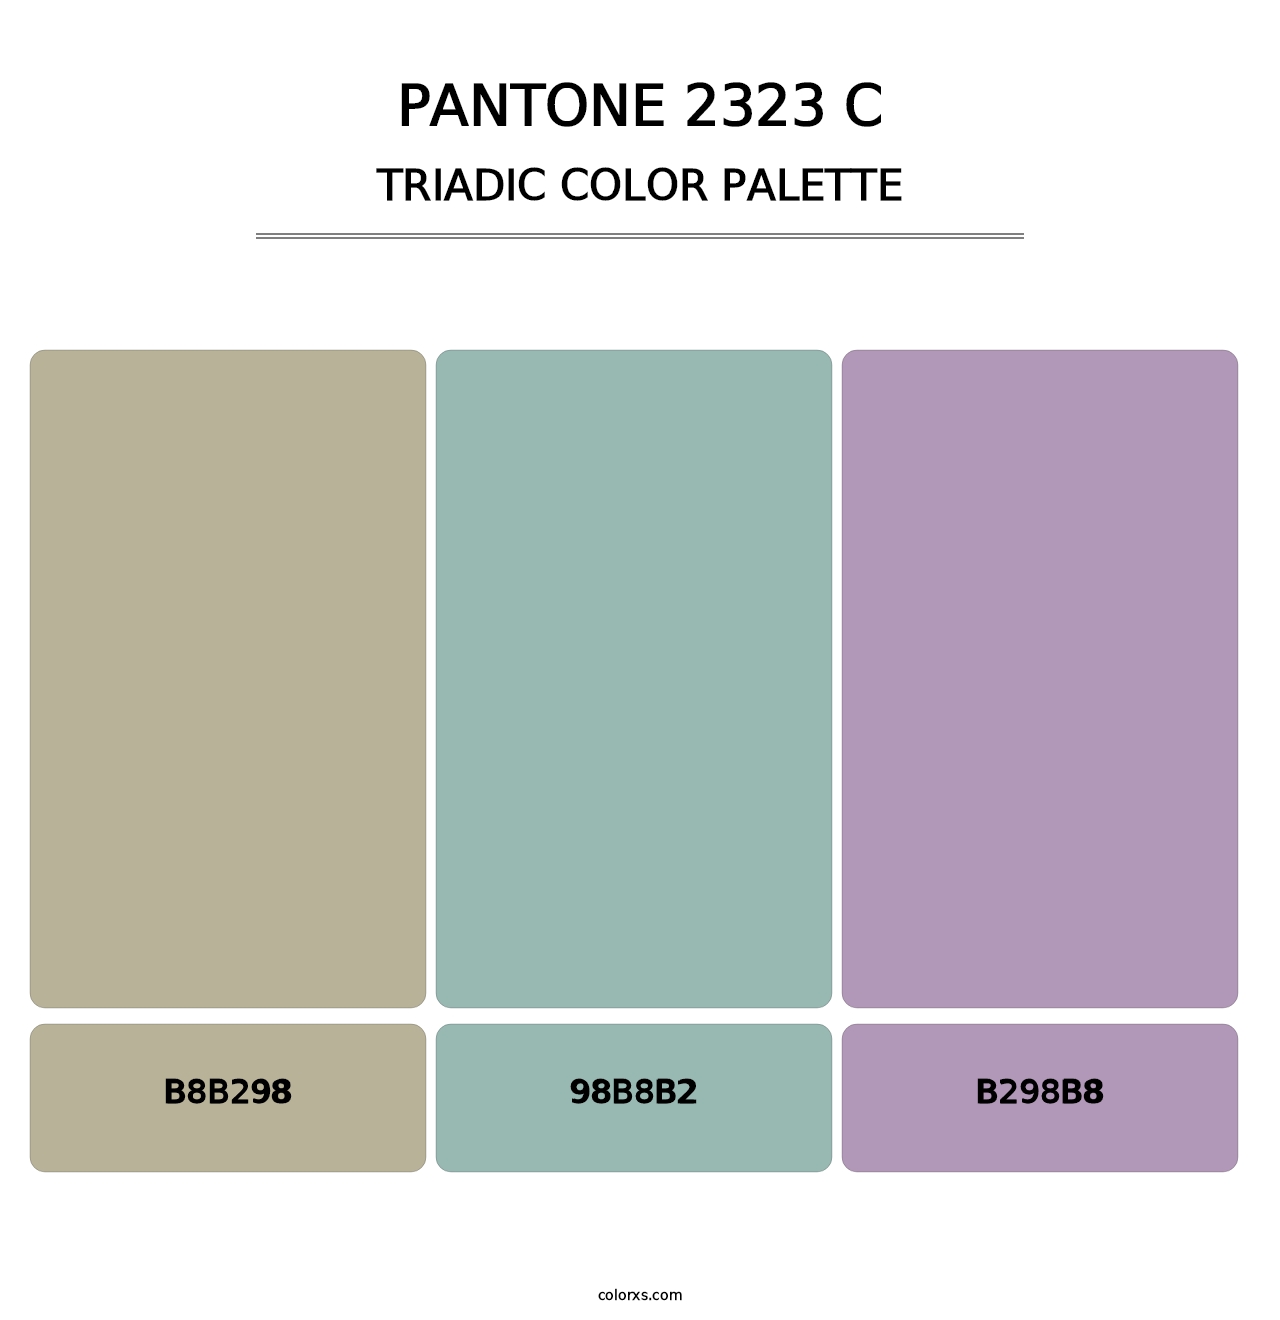 PANTONE 2323 C - Triadic Color Palette